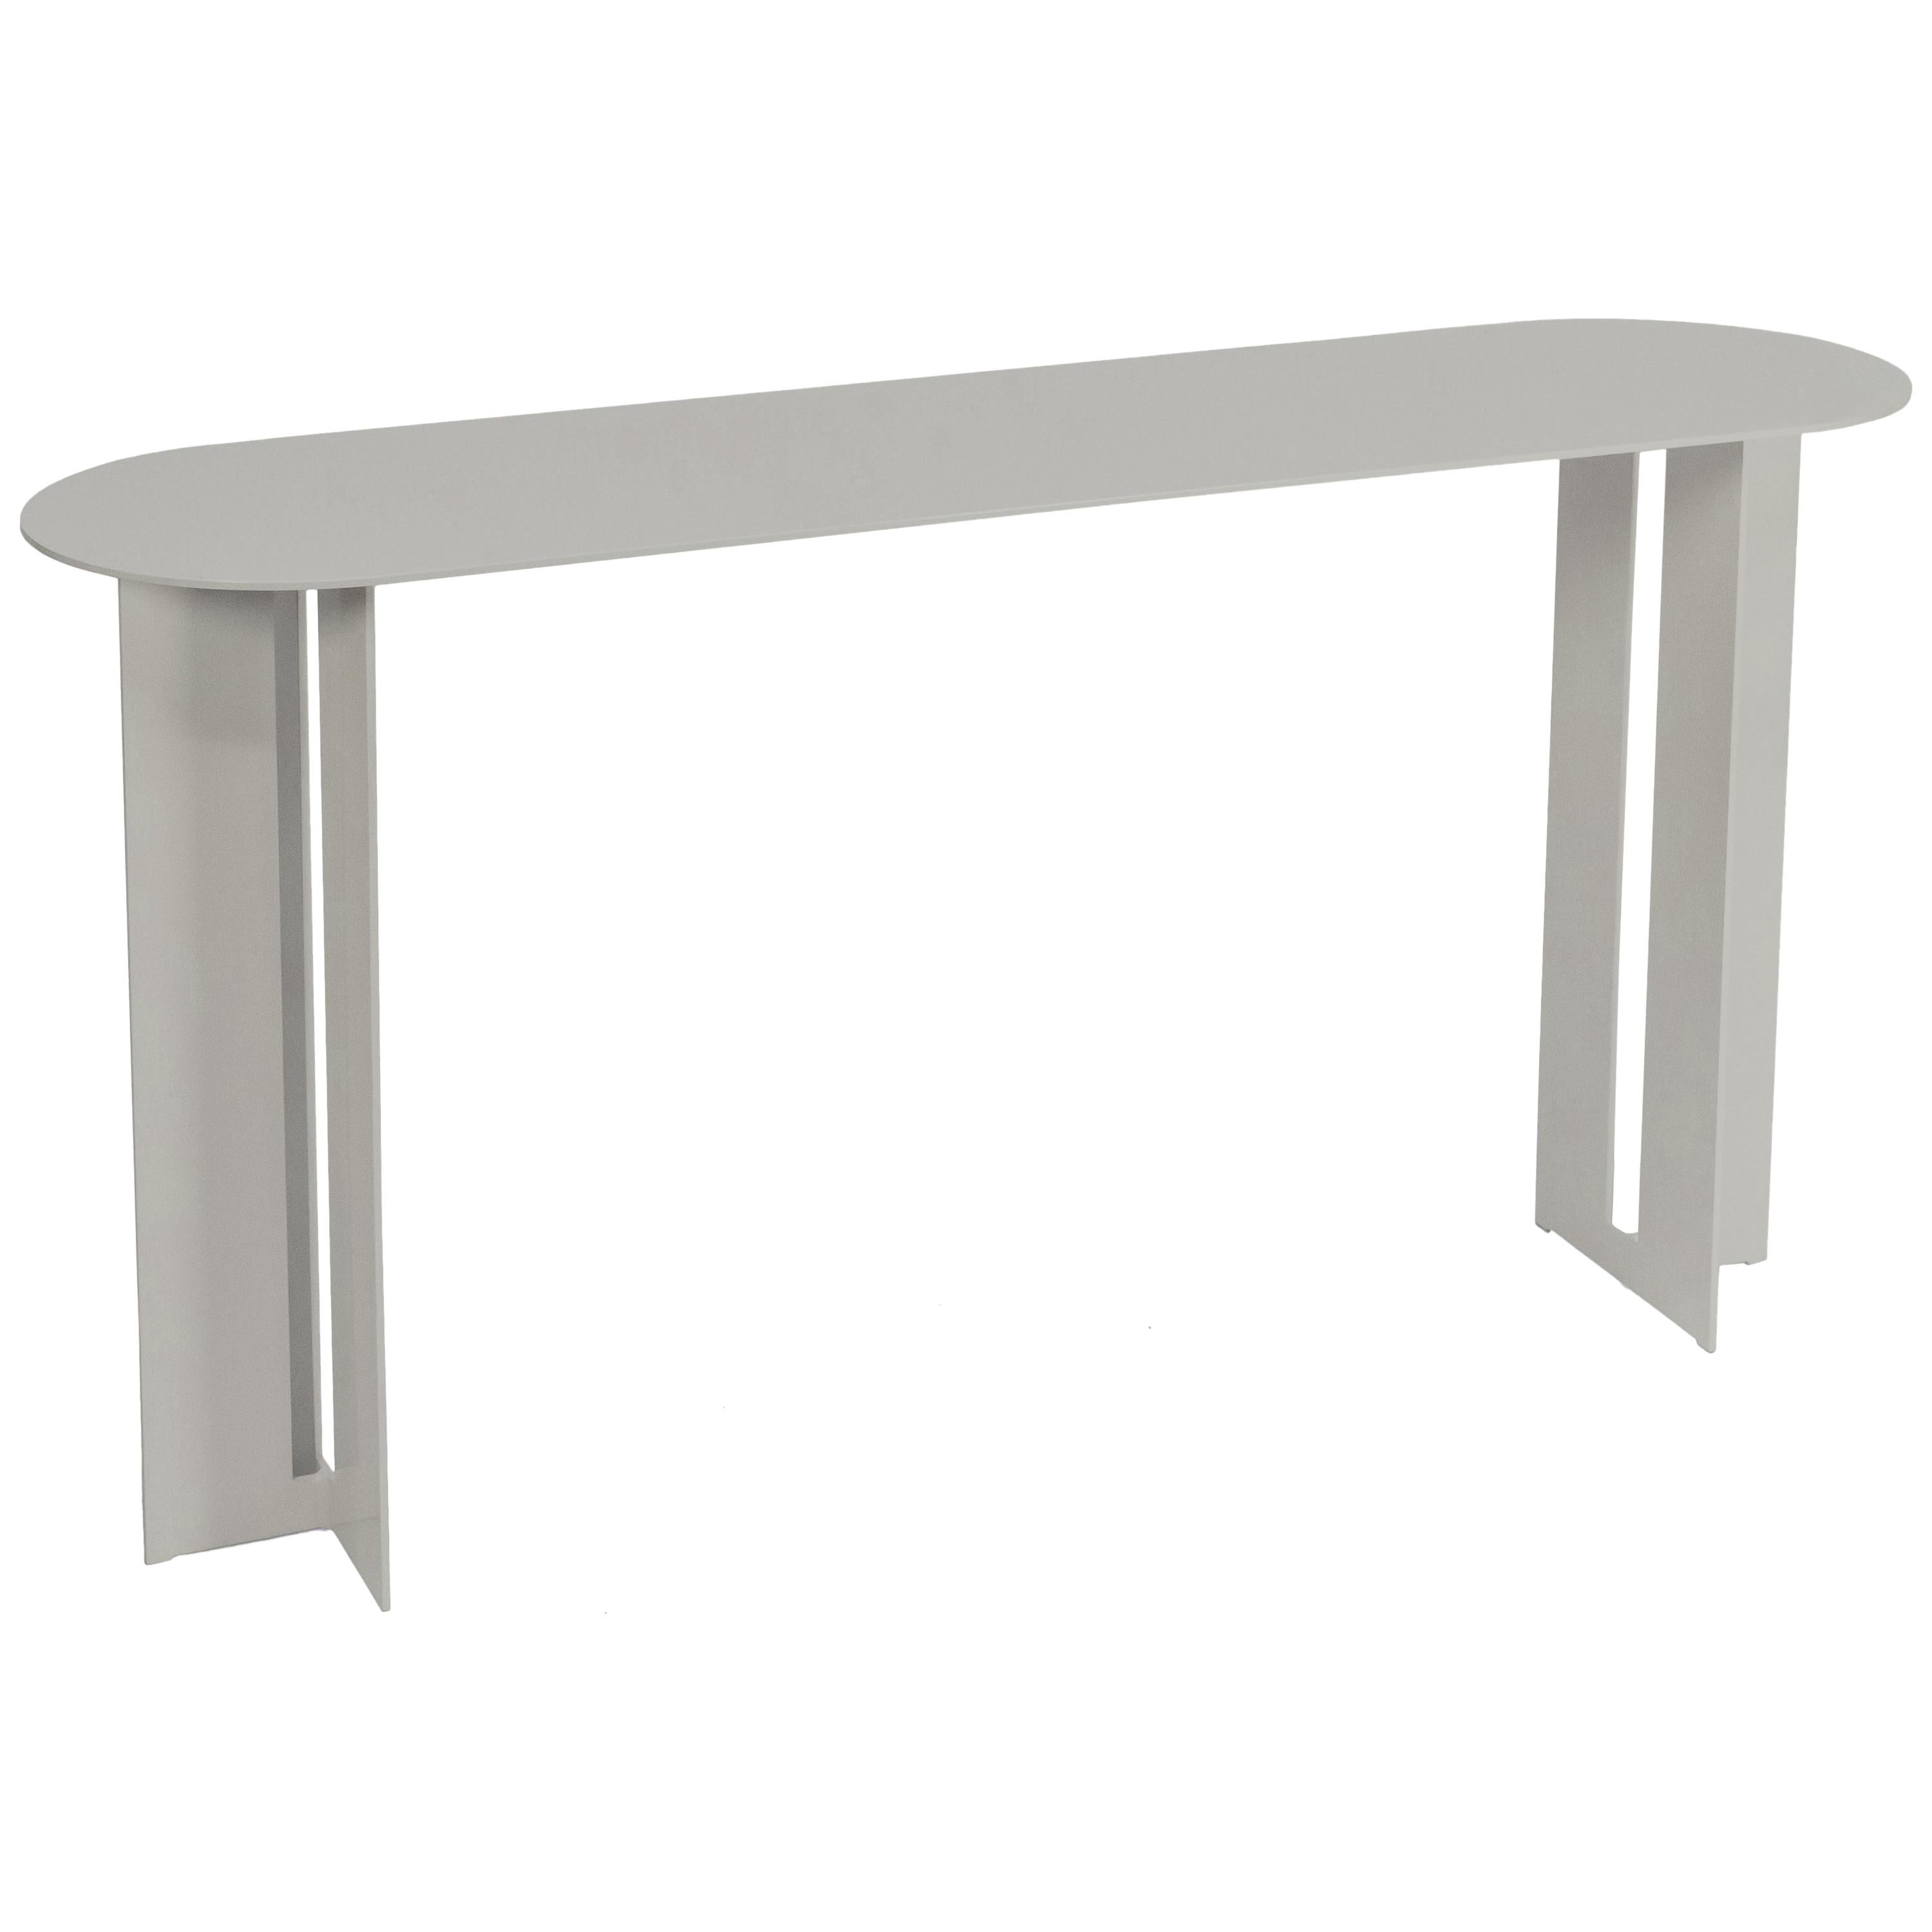 Table console Mers en aluminium satiné